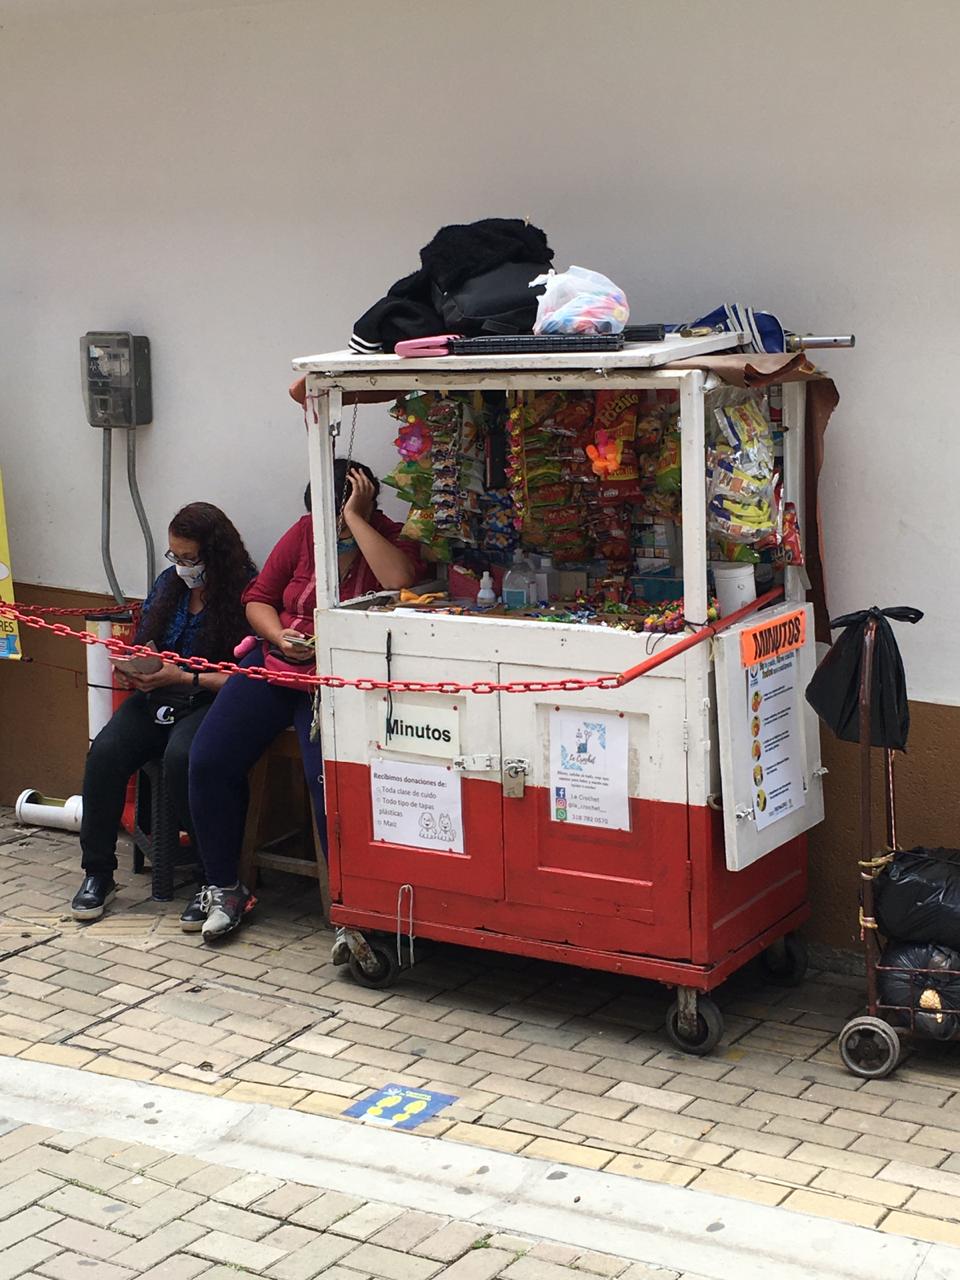 Avanza plan de reapertura de los puestos de ventas informales en el municipio de Rionegro